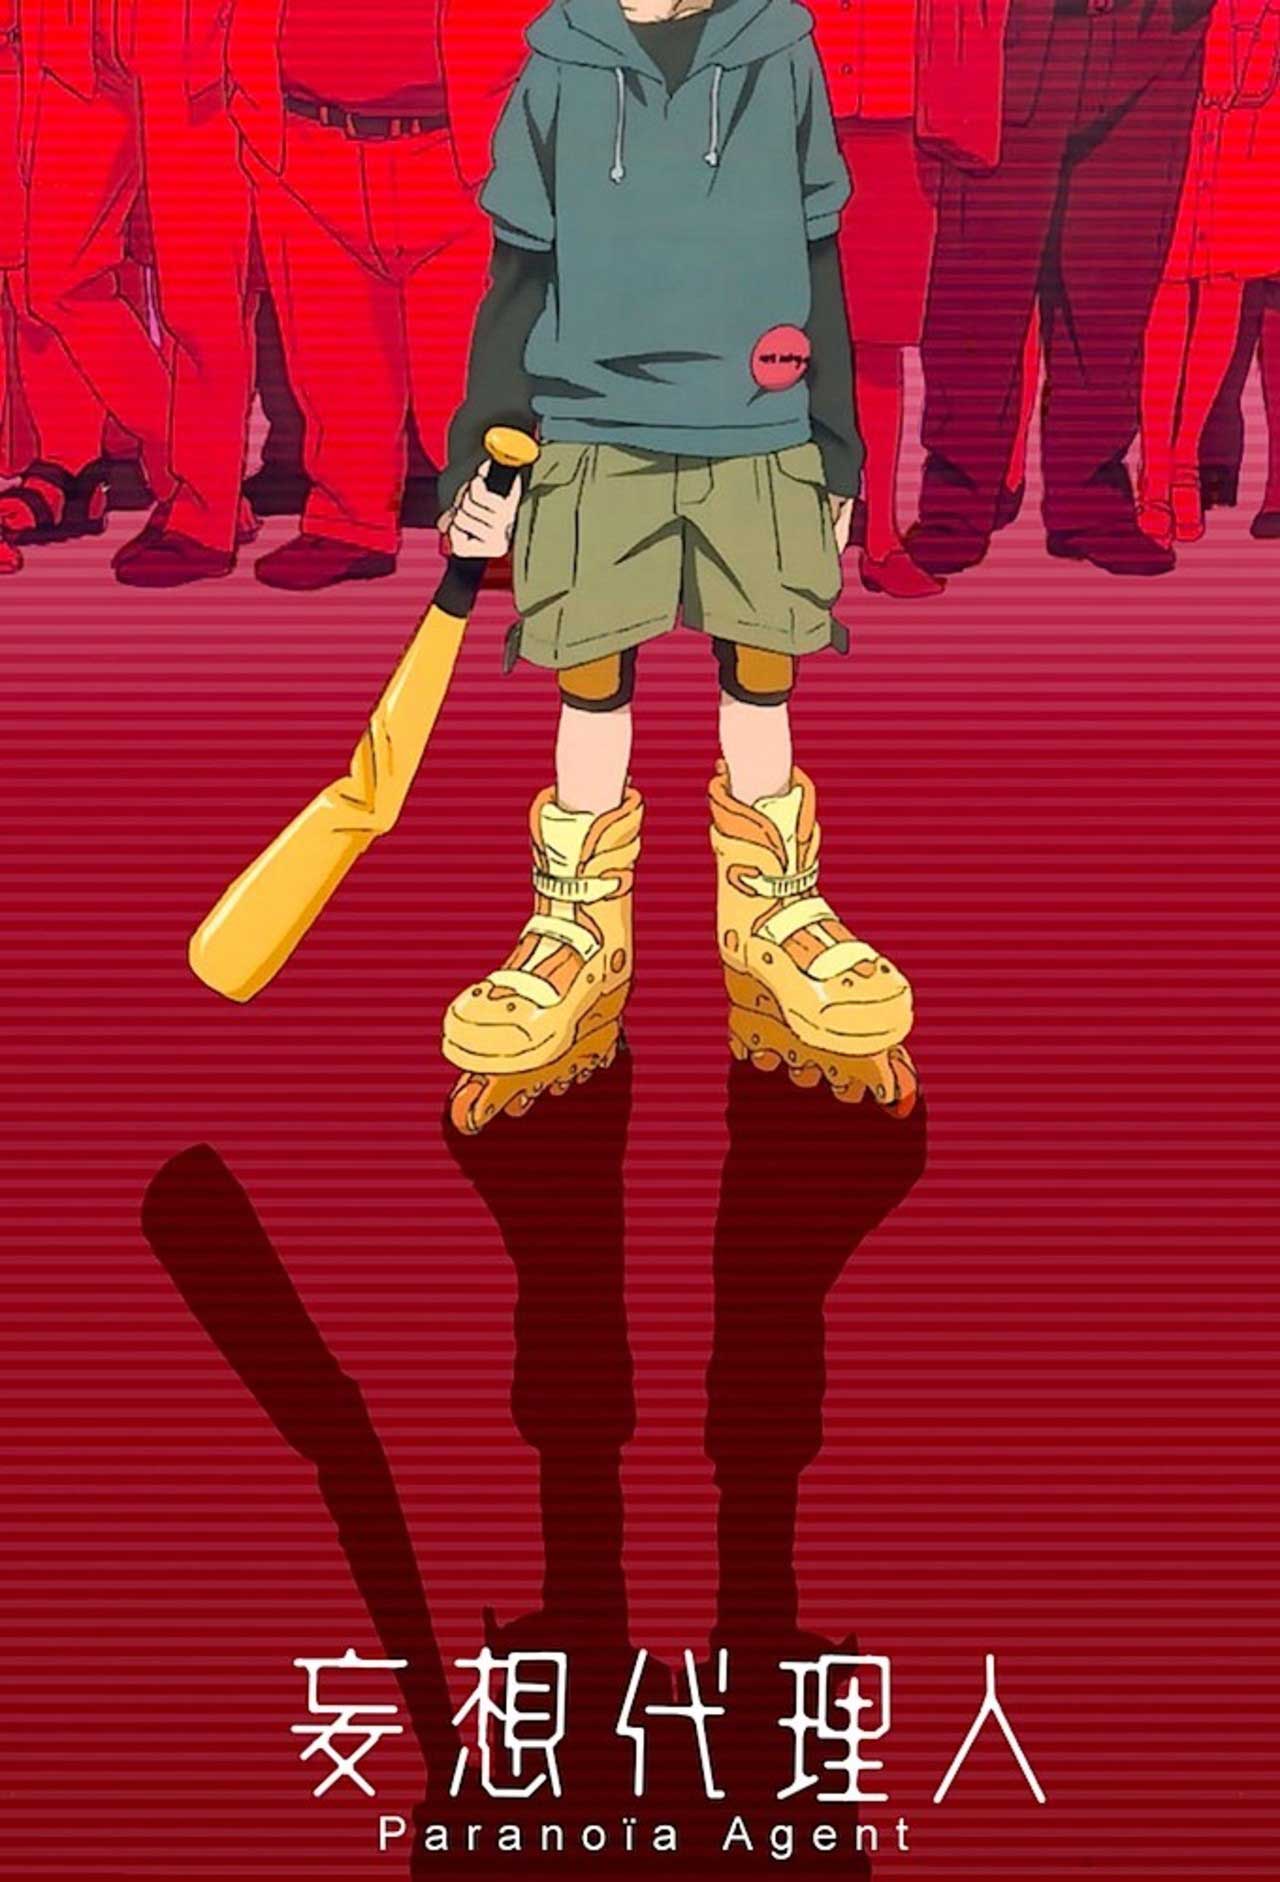 پسربچه با چوب بیسبال و کفش های طلایی در جامعه ترسناک پوستر قرمزرنگ انیمه پارانویا ایجنت